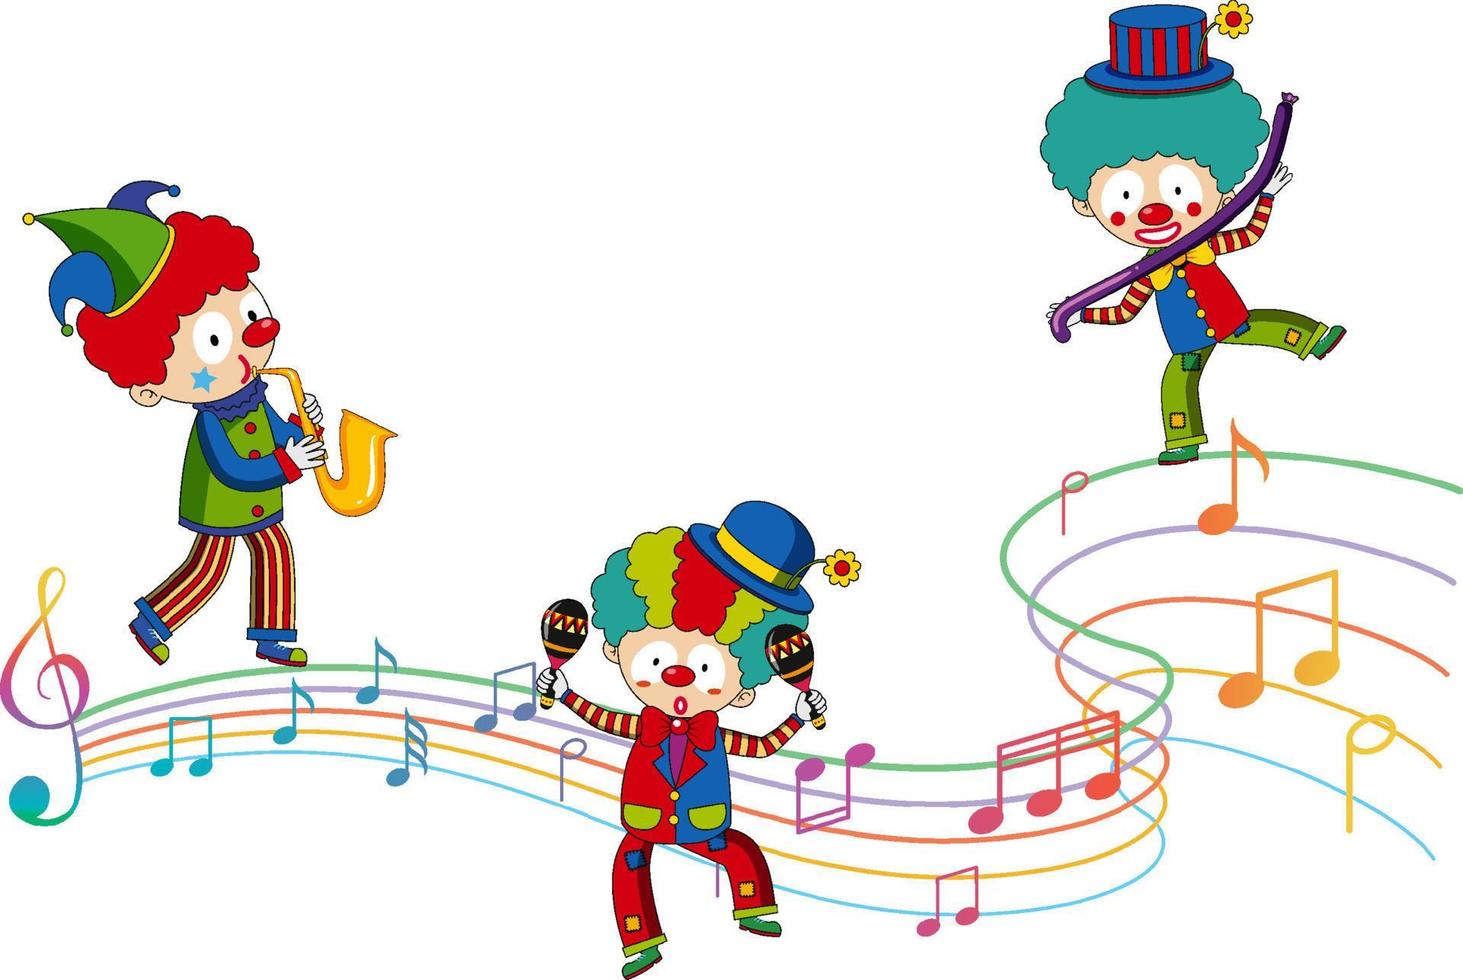 clown karton karakter met muzieknoot vector